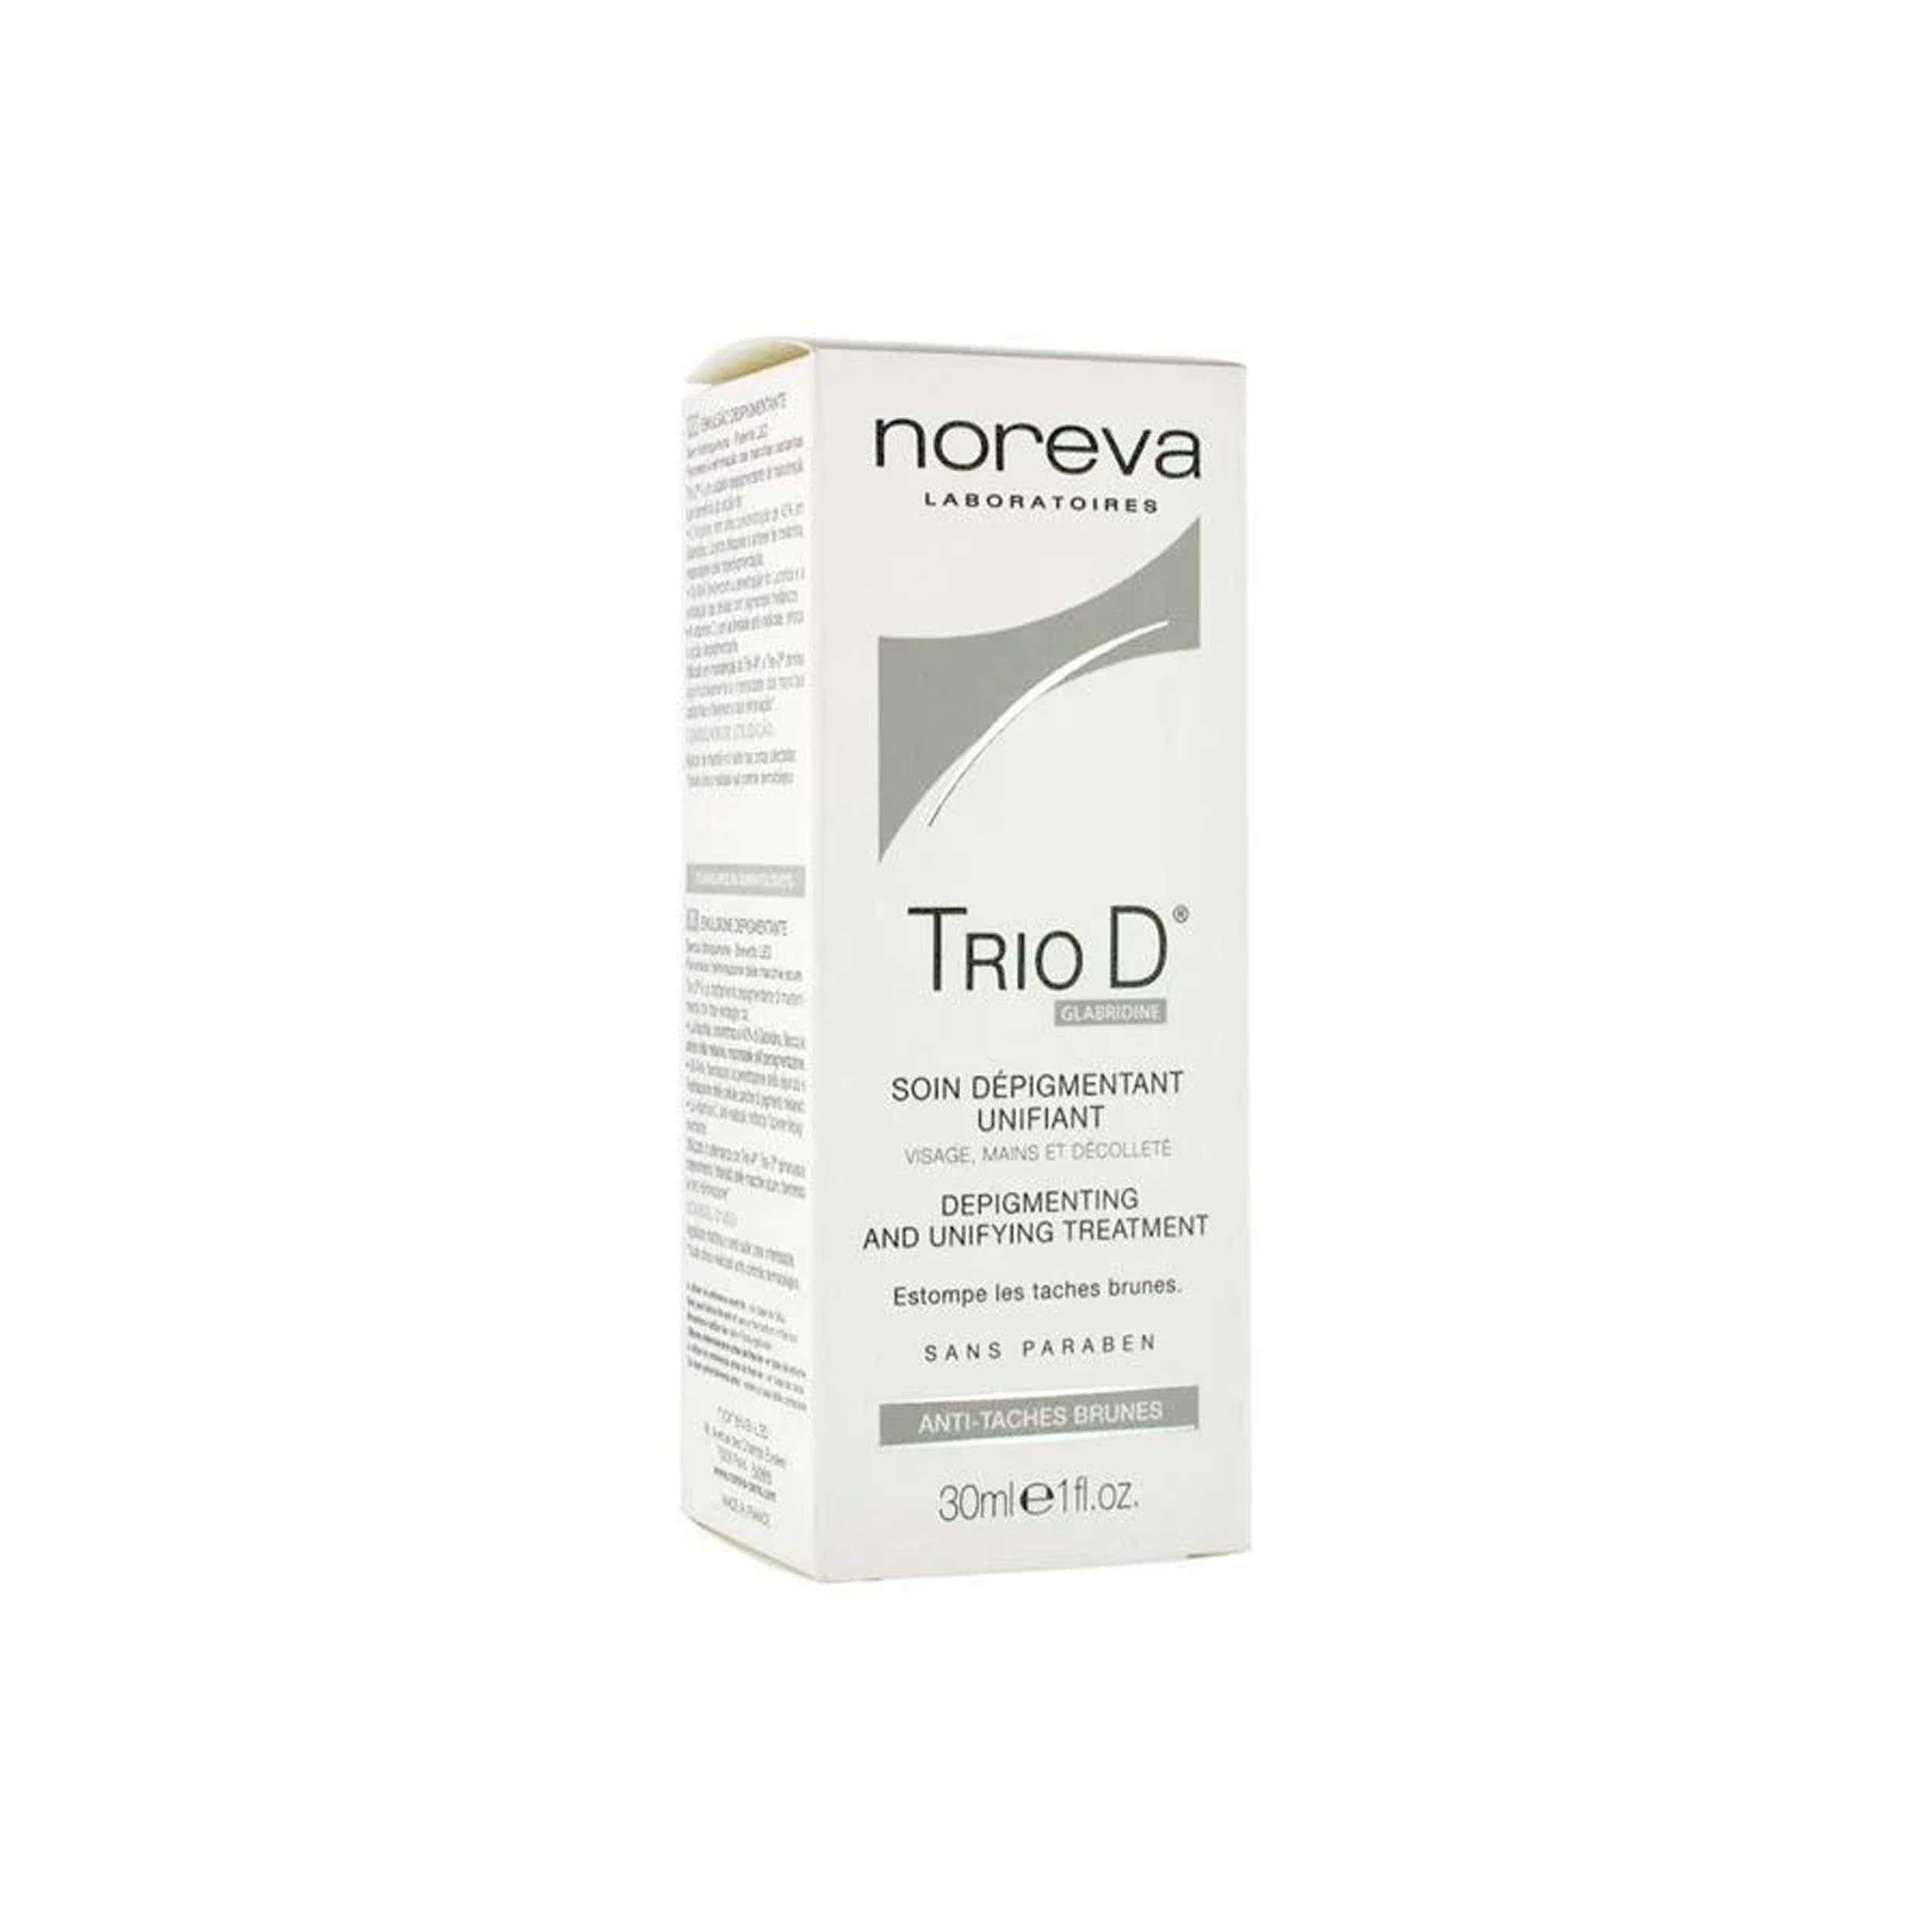 Noreva Trio D Cream 30ml